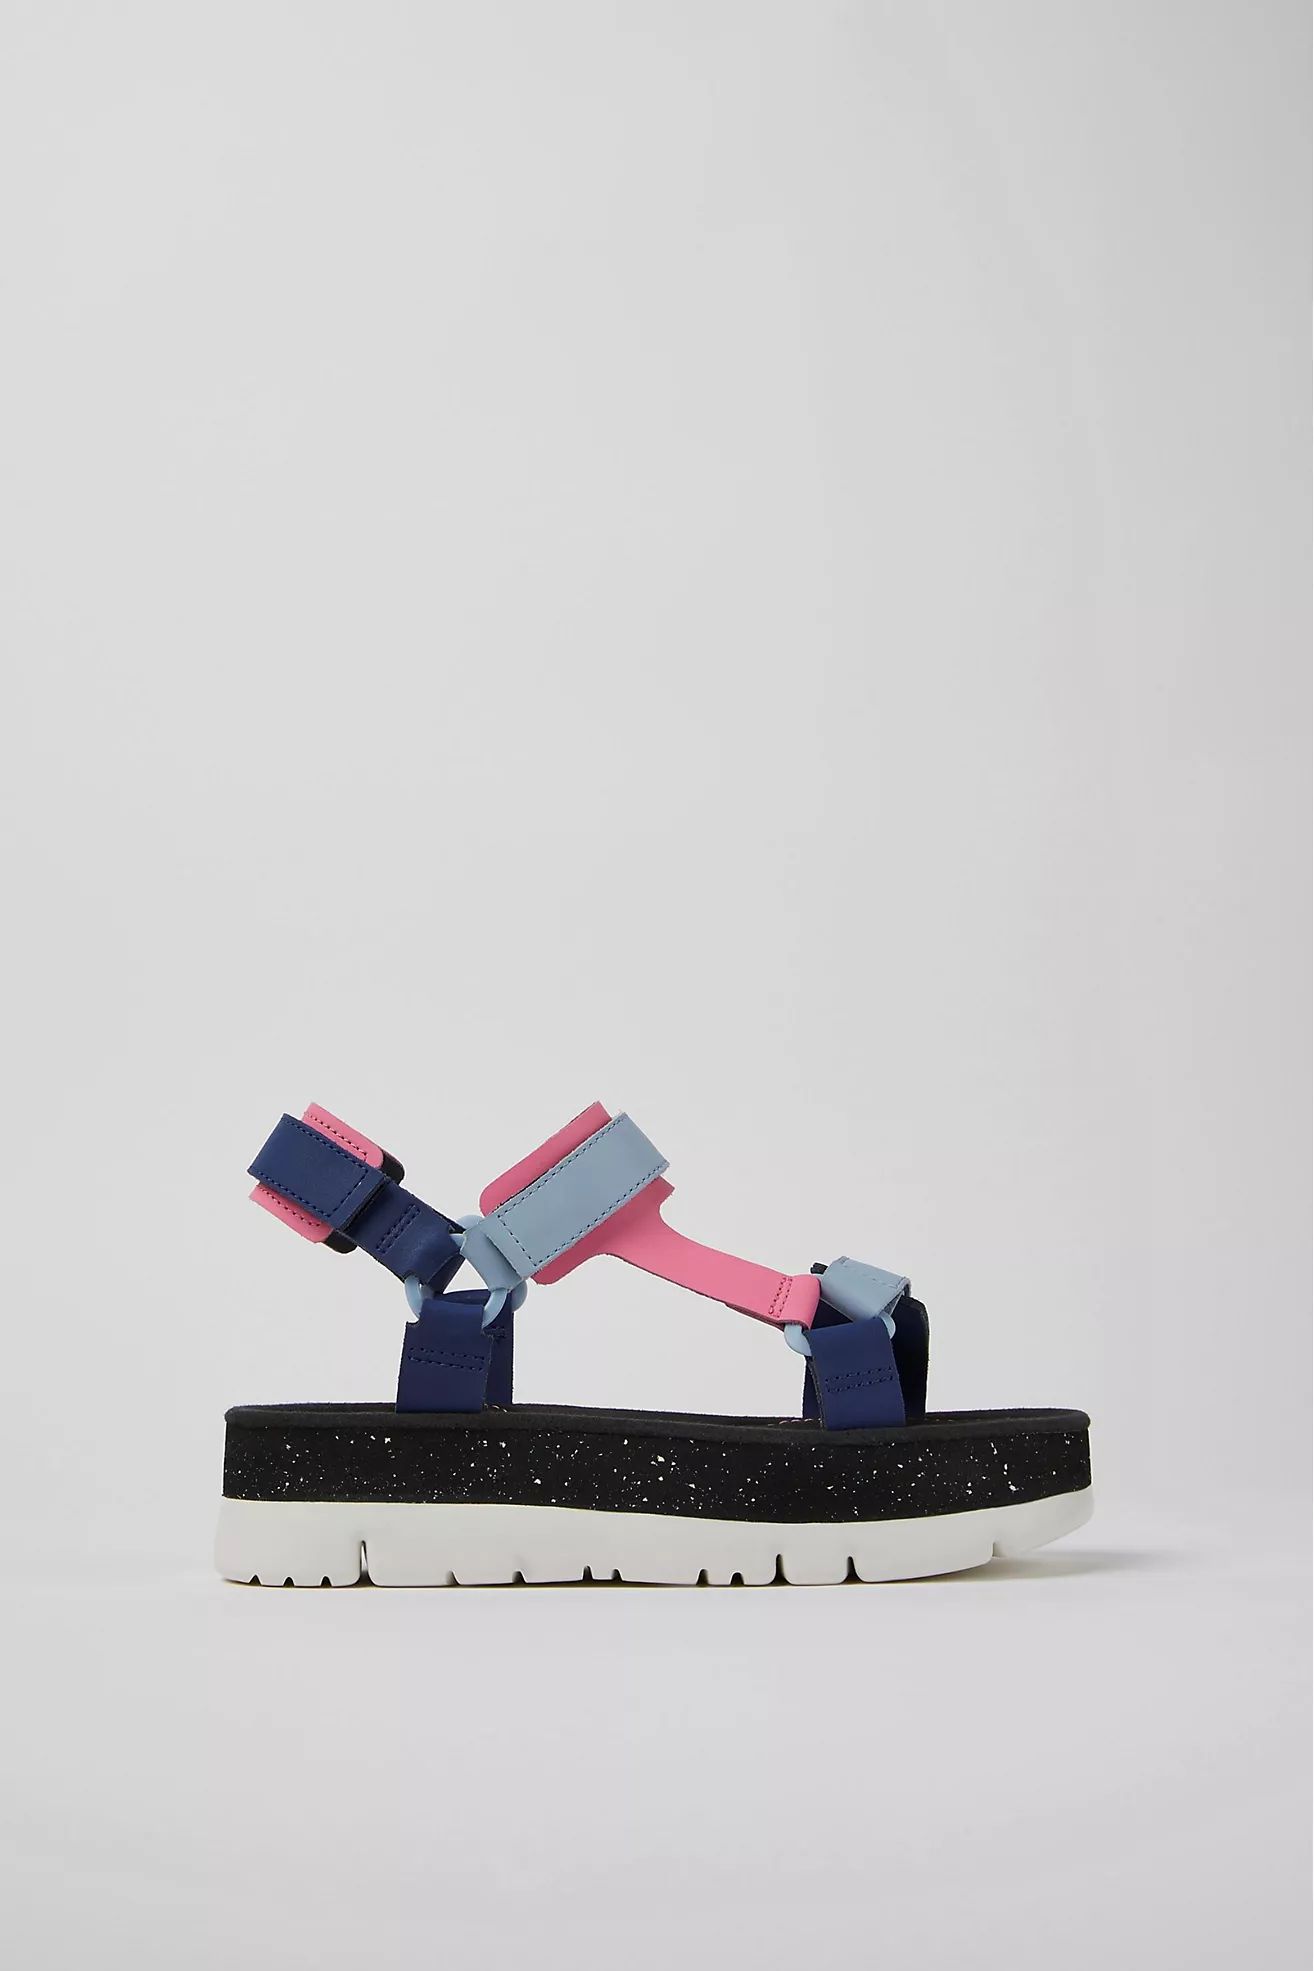 Camper Oruga Up Platform Sport Sandals | Anthropologie (US)